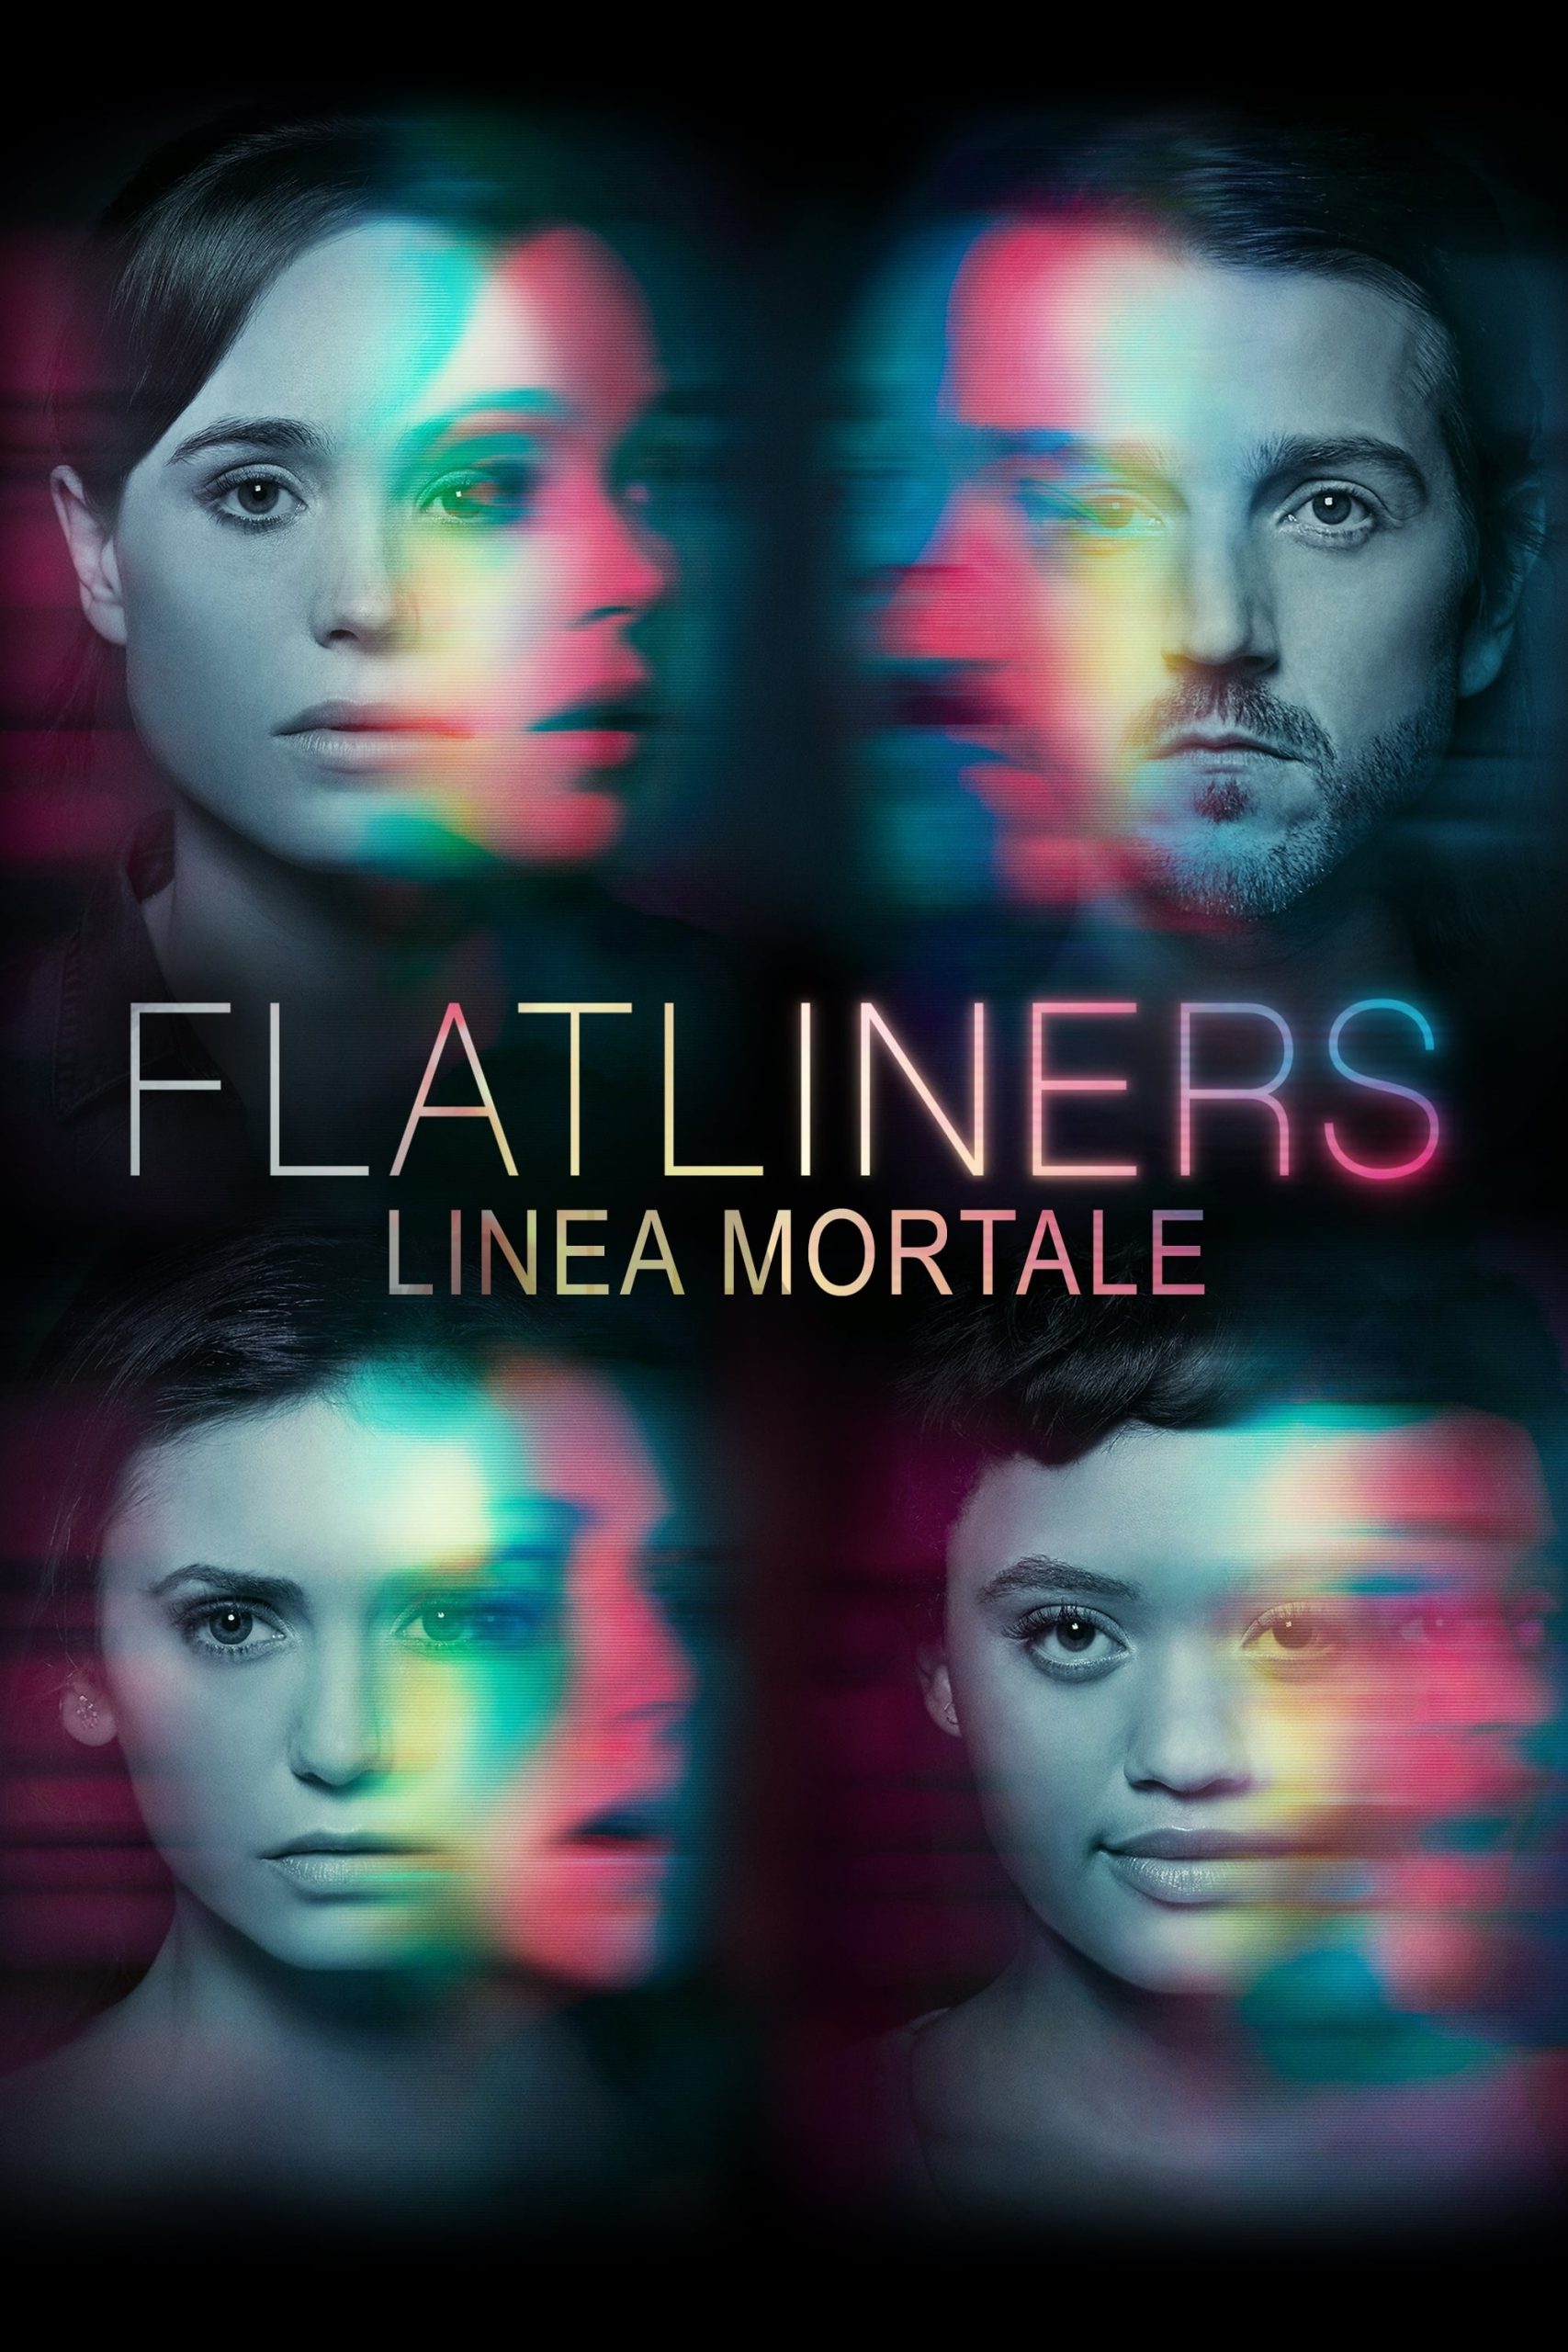 Flatliners – Linea mortale [HD] (2017)